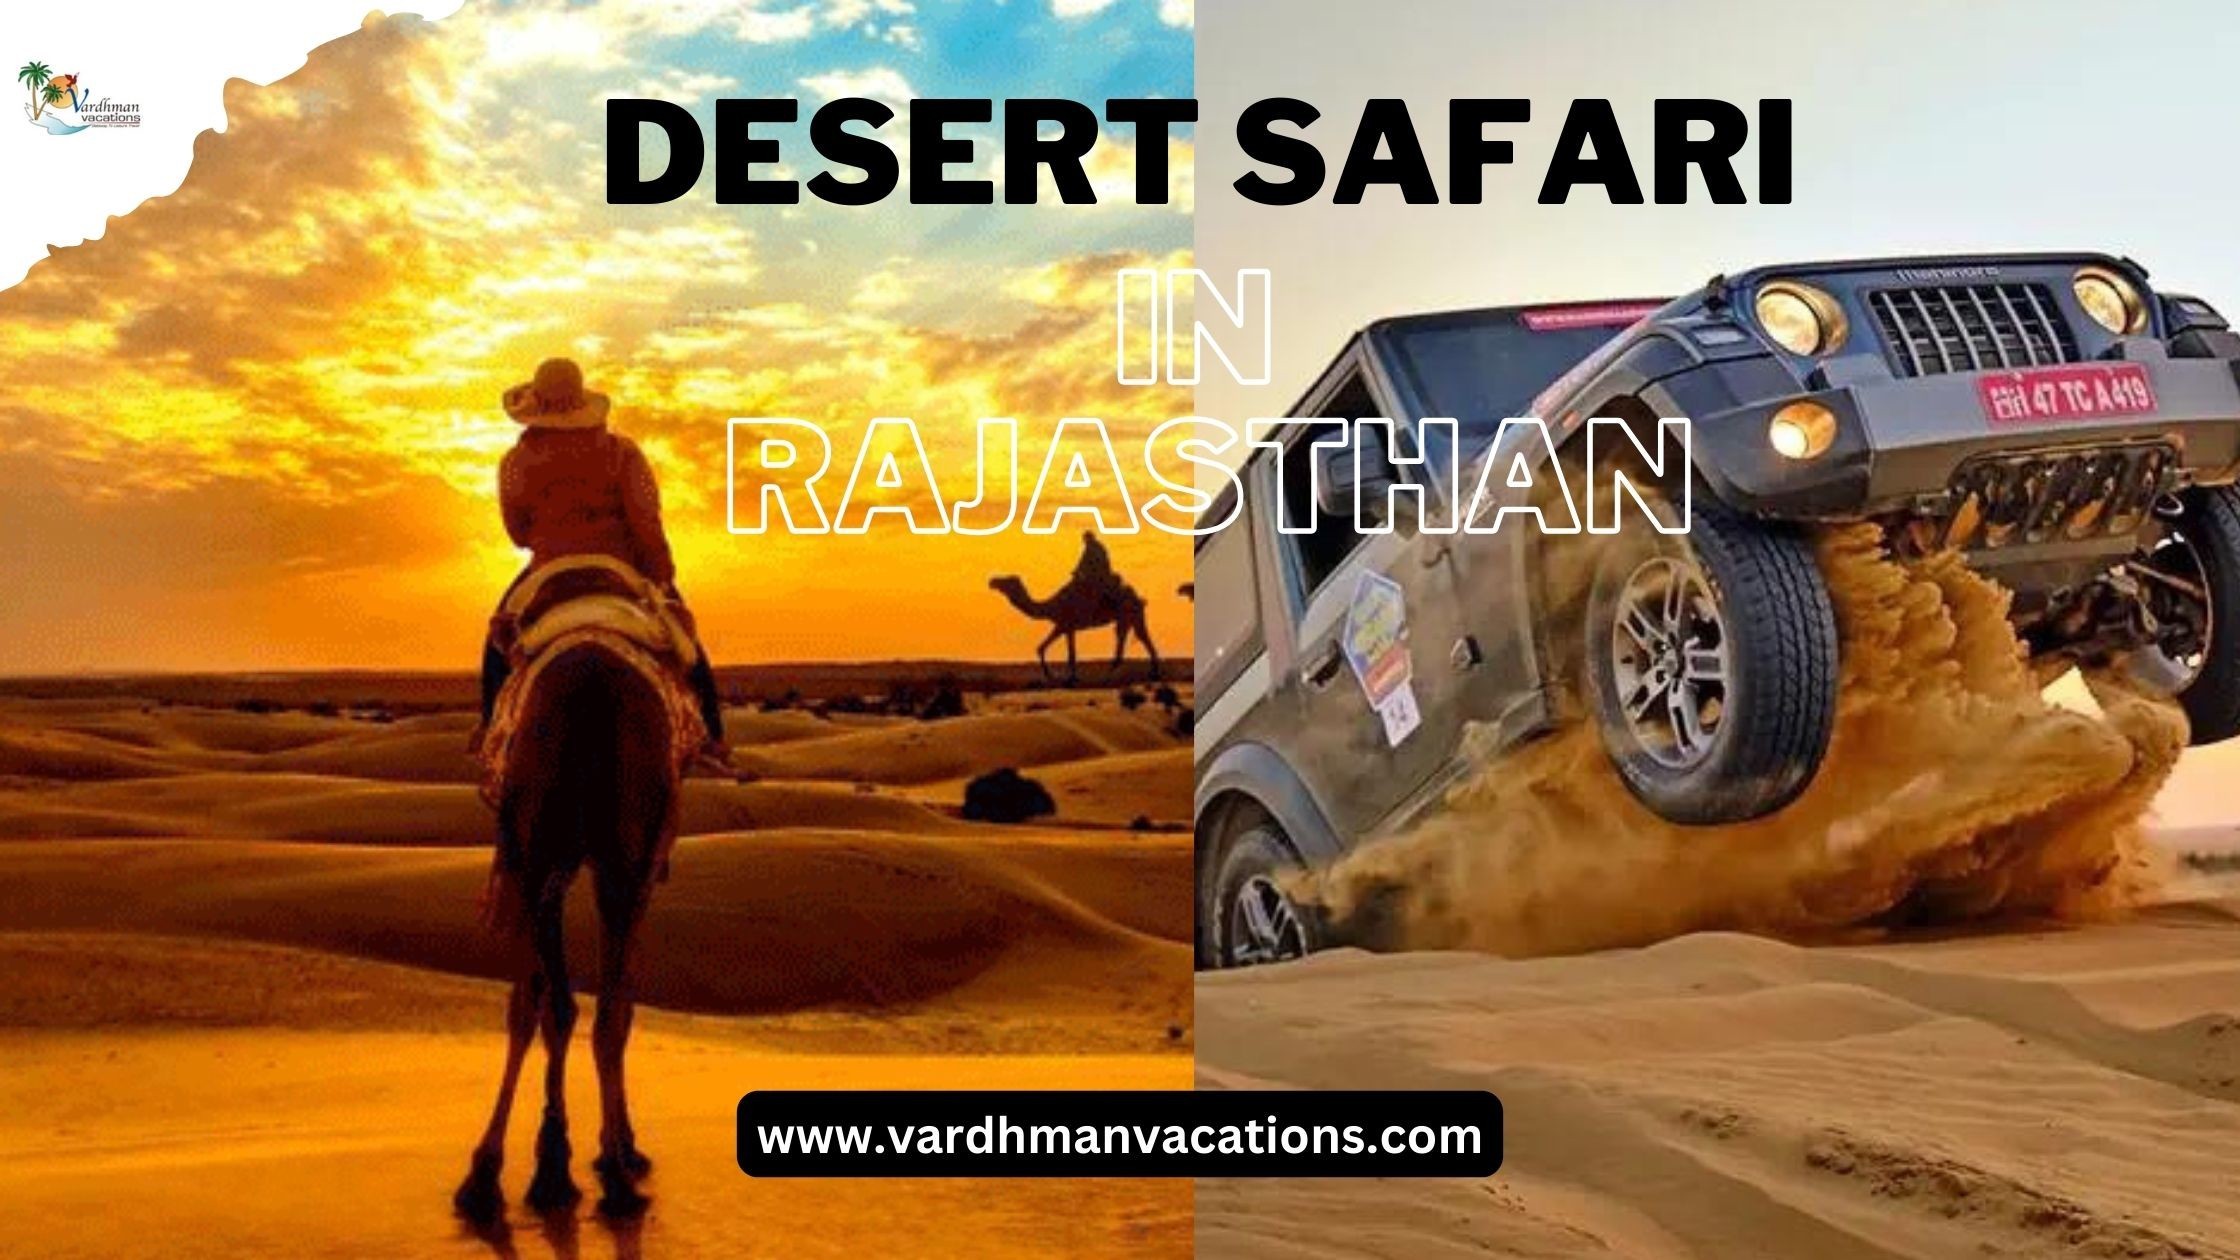 Top Must-Visit Desert Safari Destinations in Rajasthan This Year